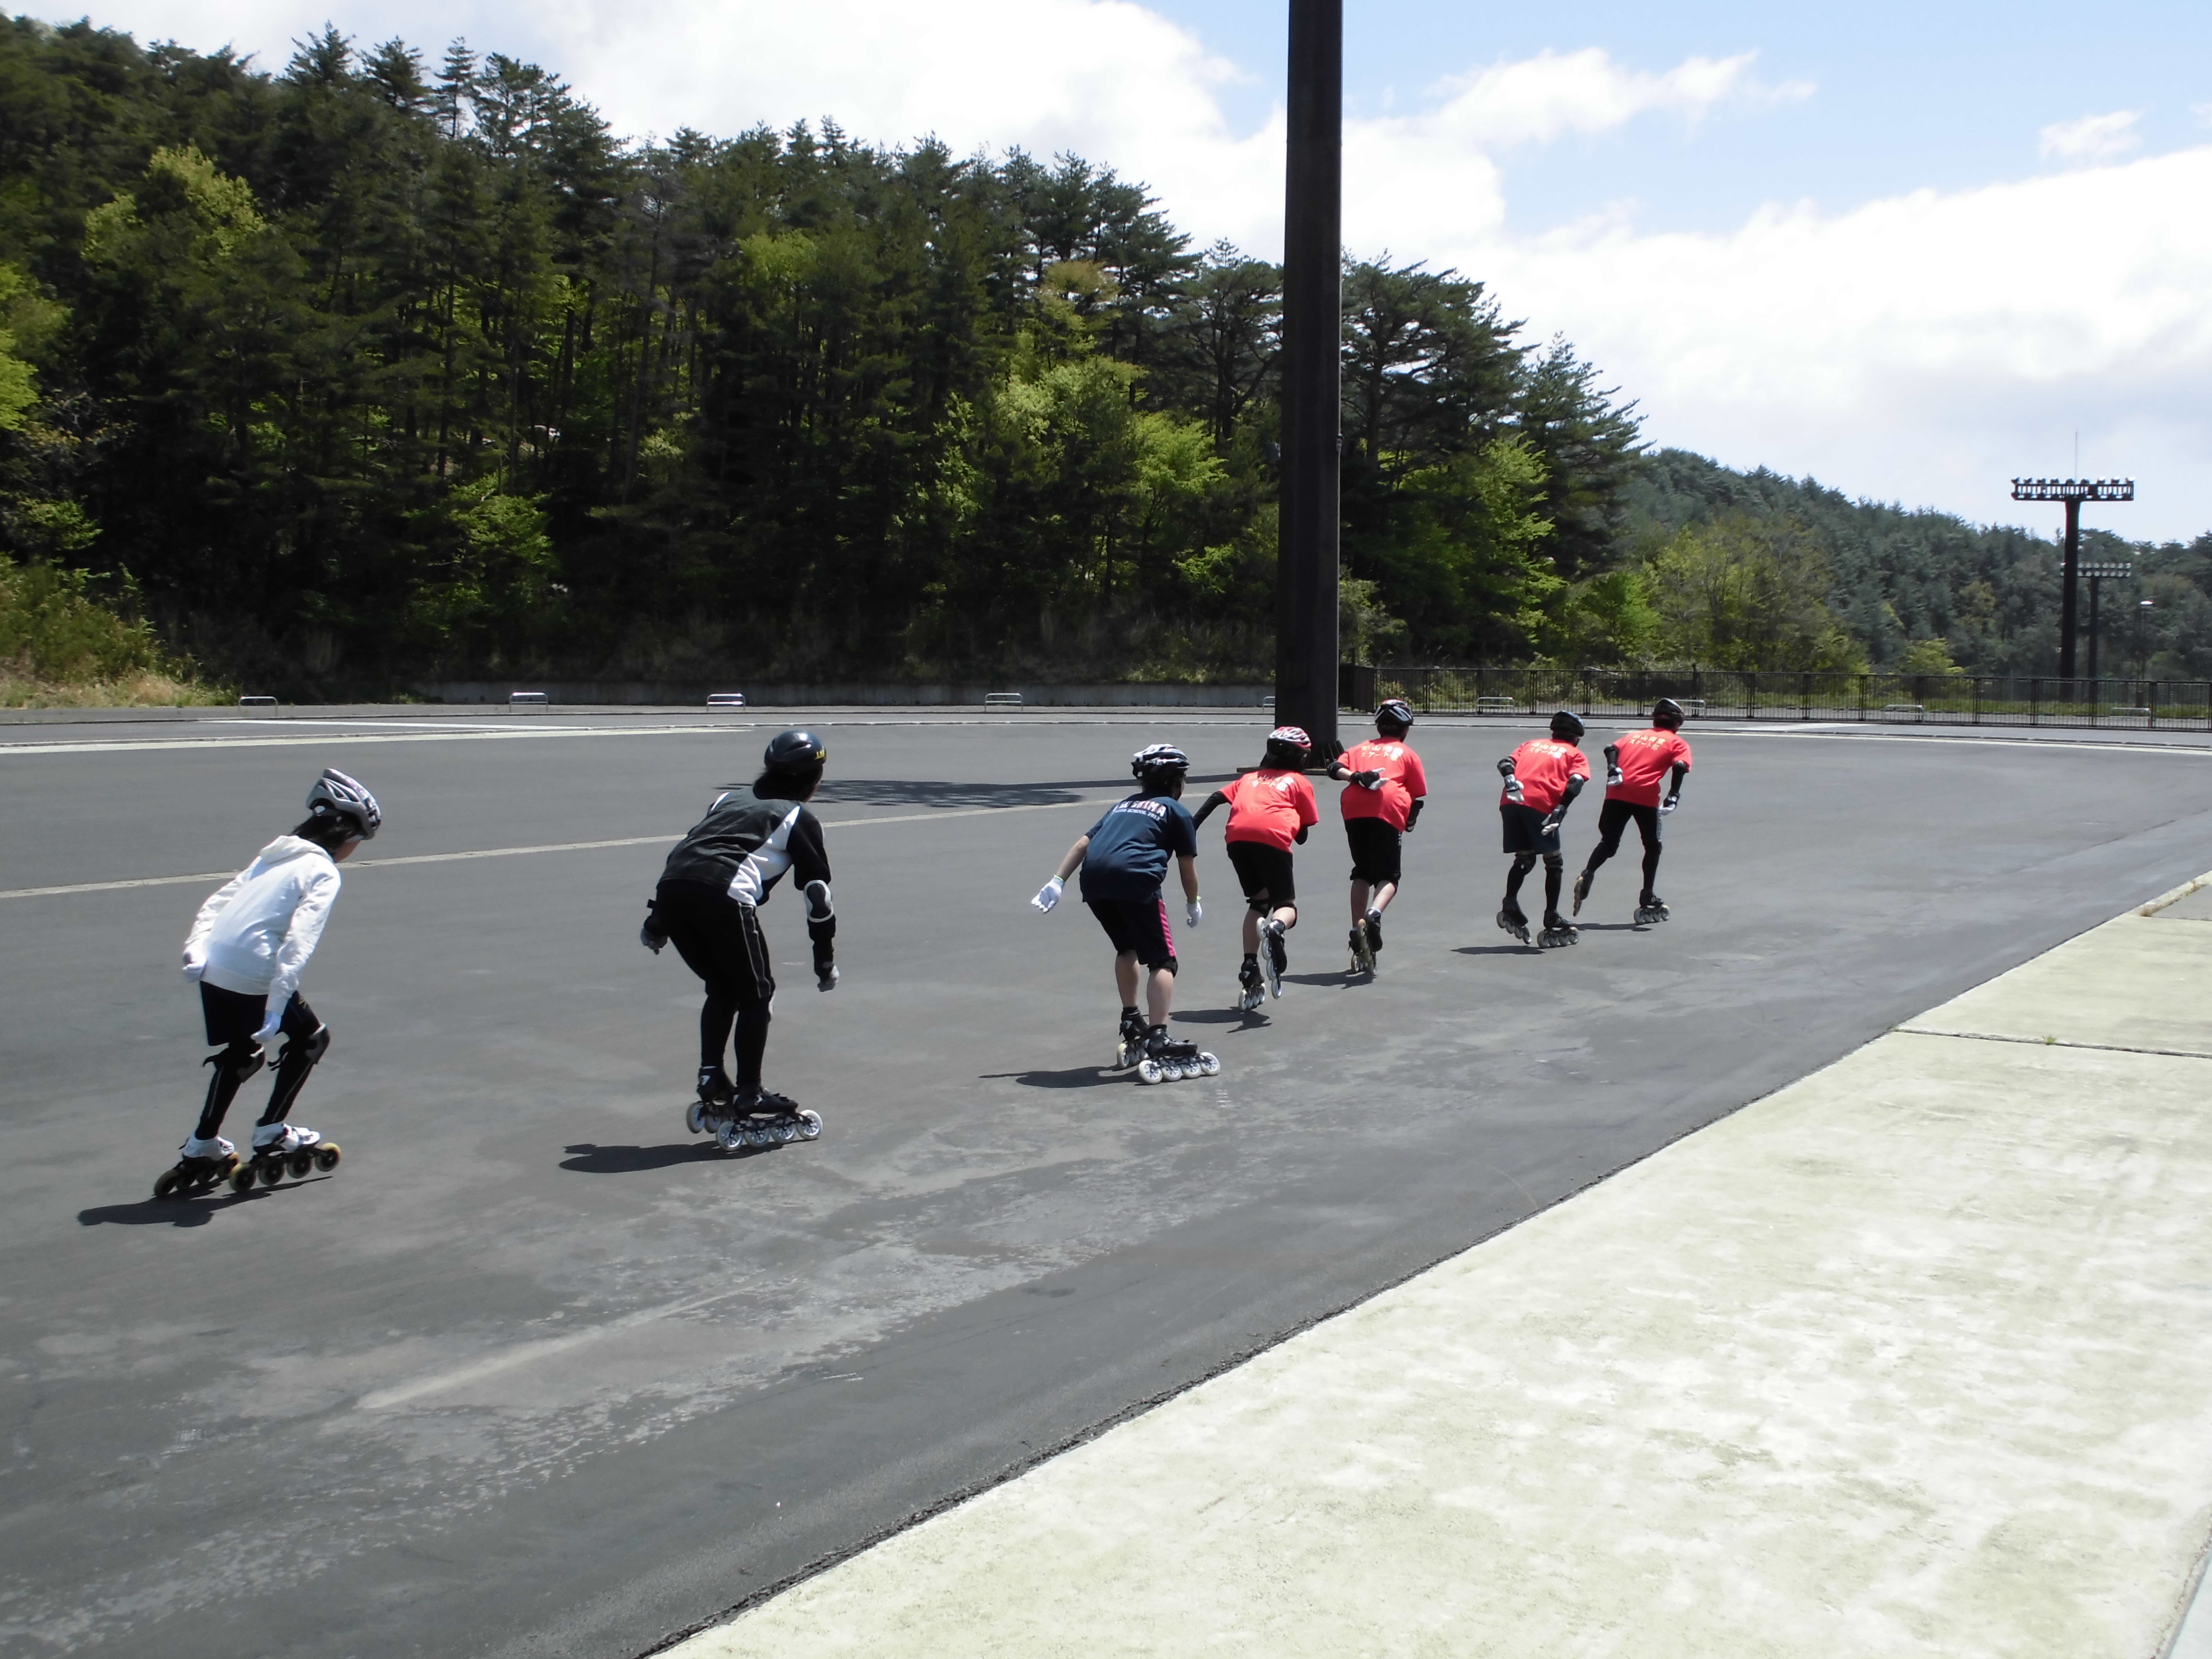 郡山スケート場夏期営業のお知らせ 磐梯熱海スポーツパーク 公式ホームページ